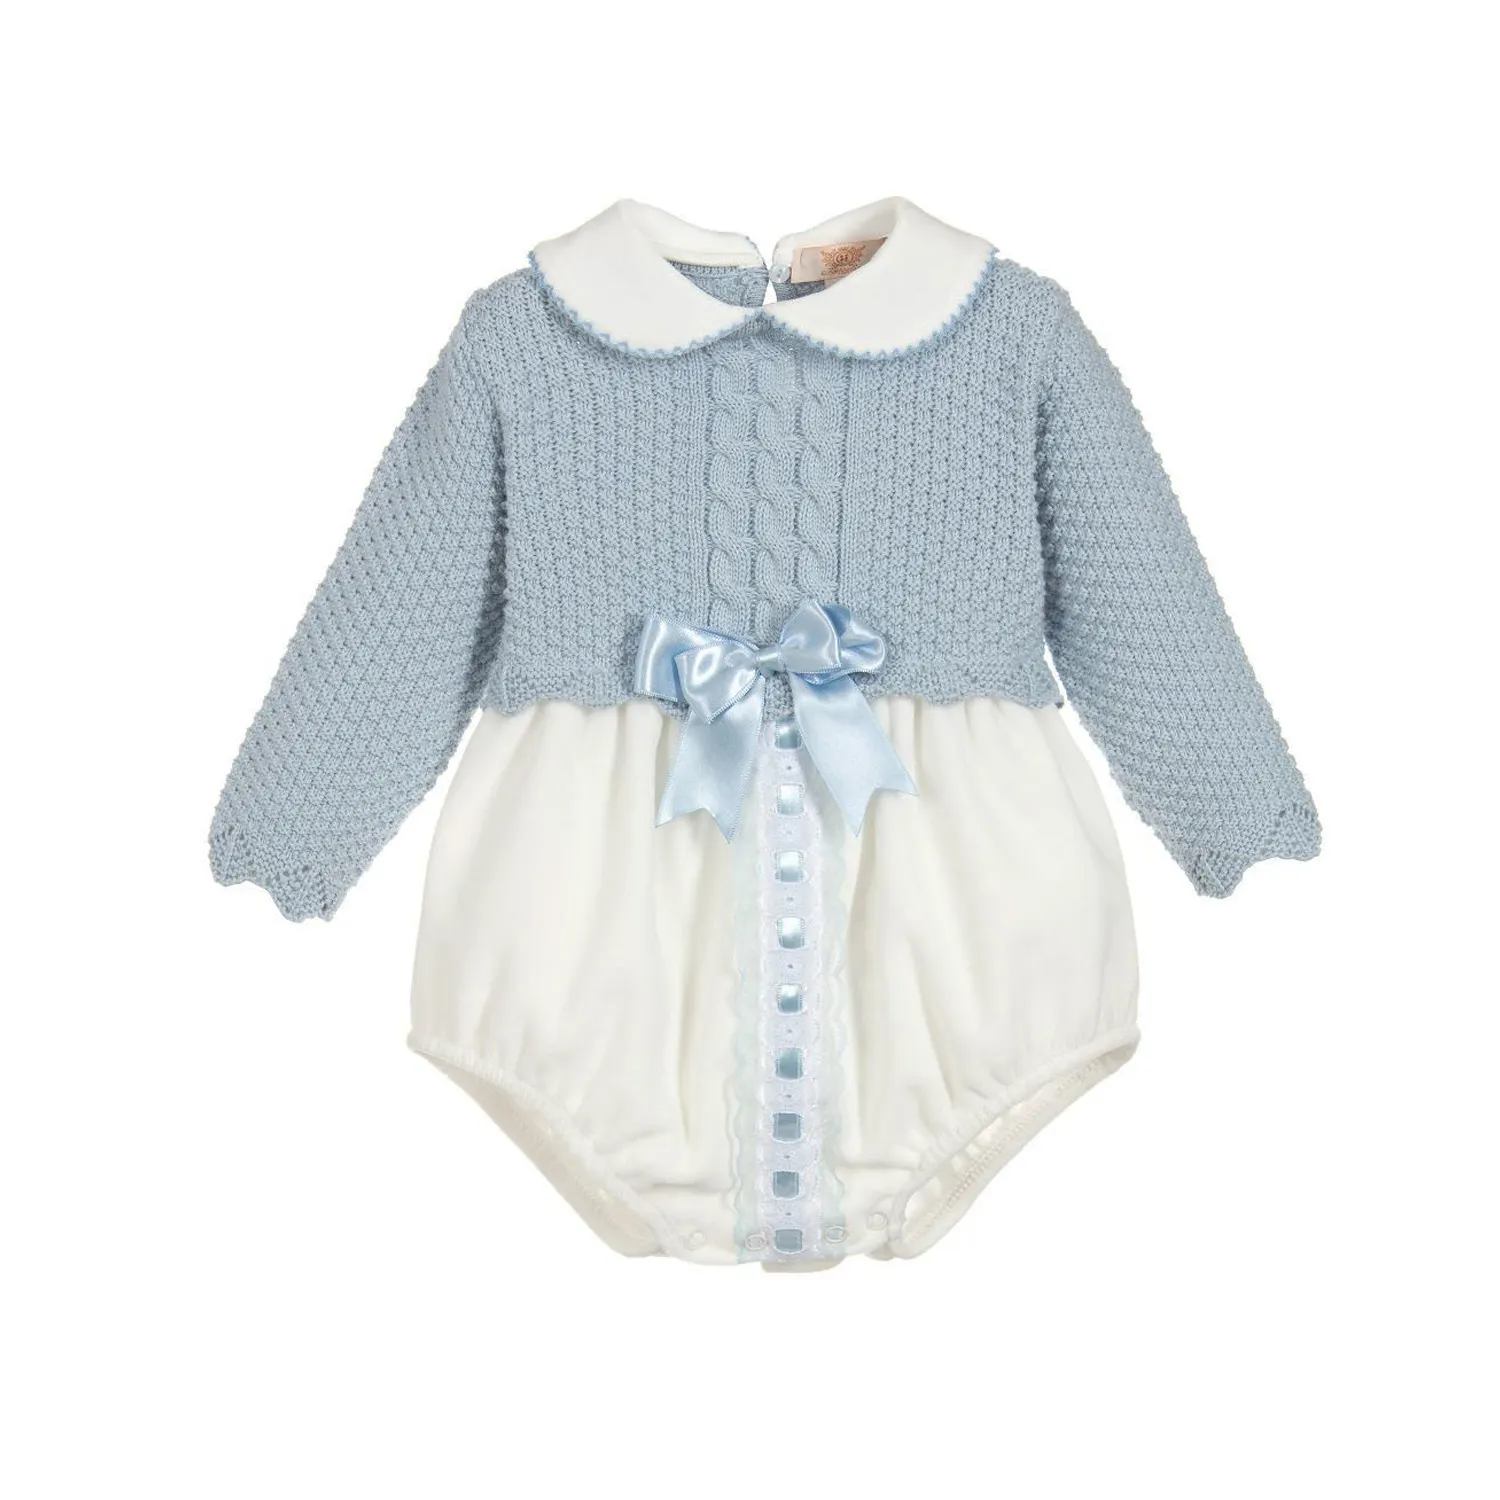 Nouveaux vêtements pour bébés enfants combinaisons en coton tricoté personnalisé à manches longues pour bébés filles grenouillère avec nœud